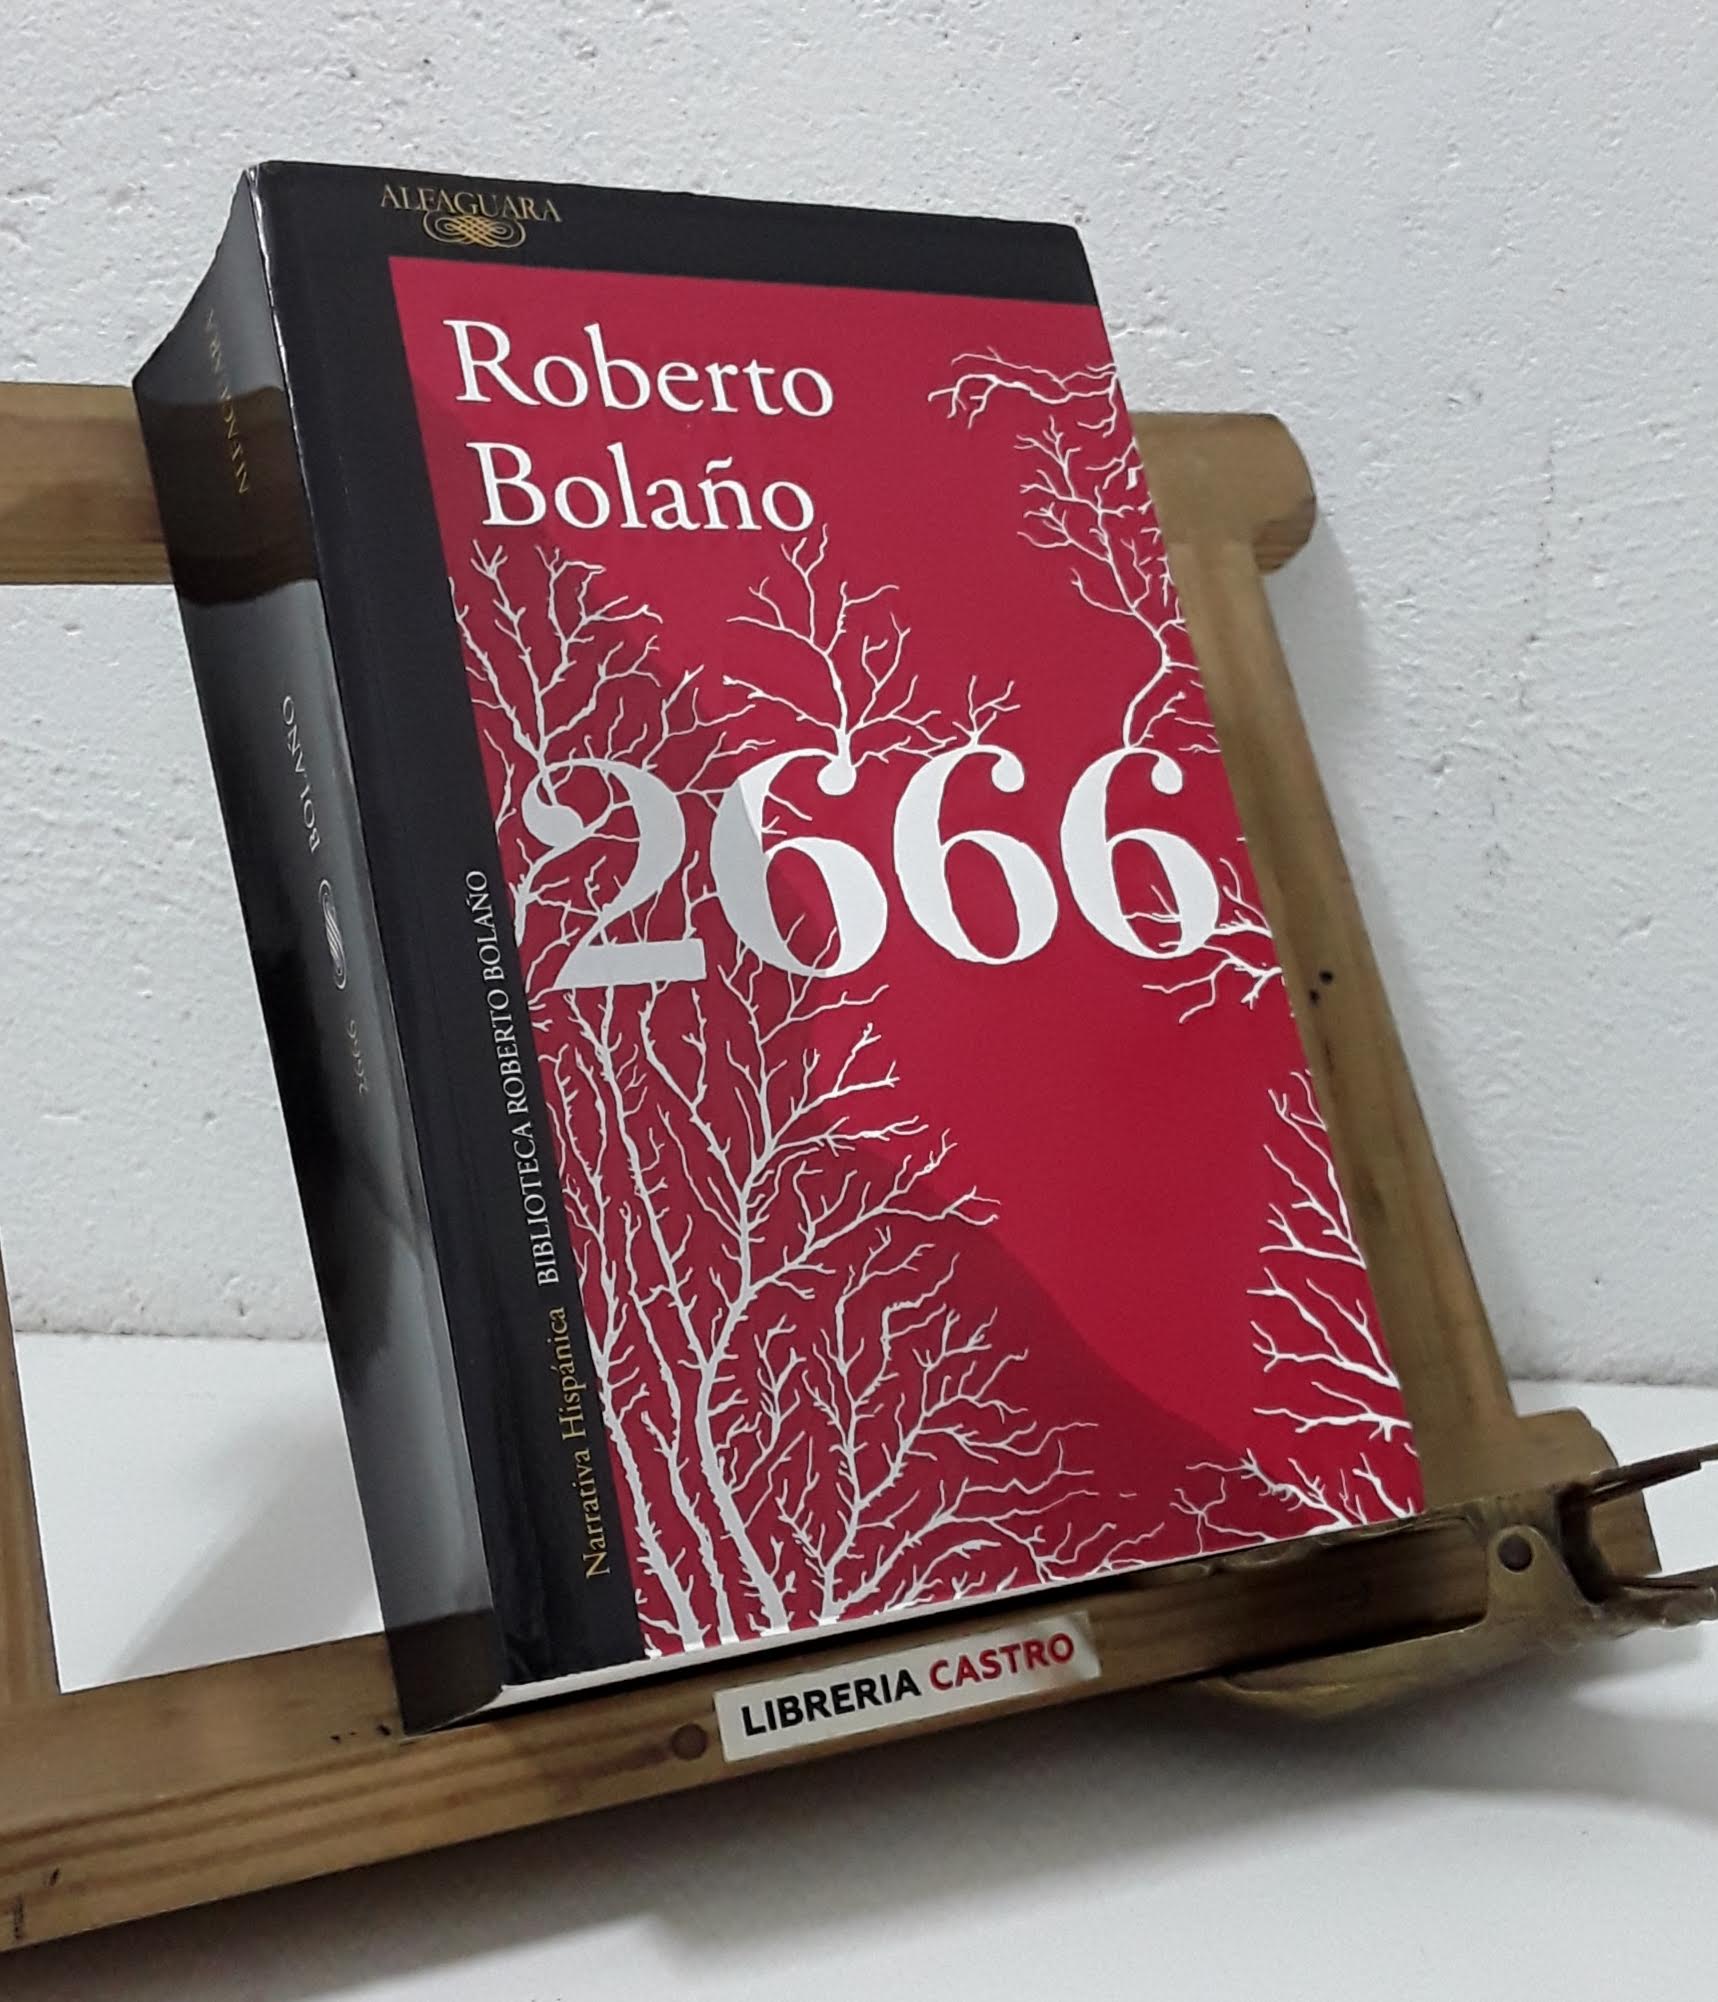 2666 By Roberto Bolano Libreria Castro